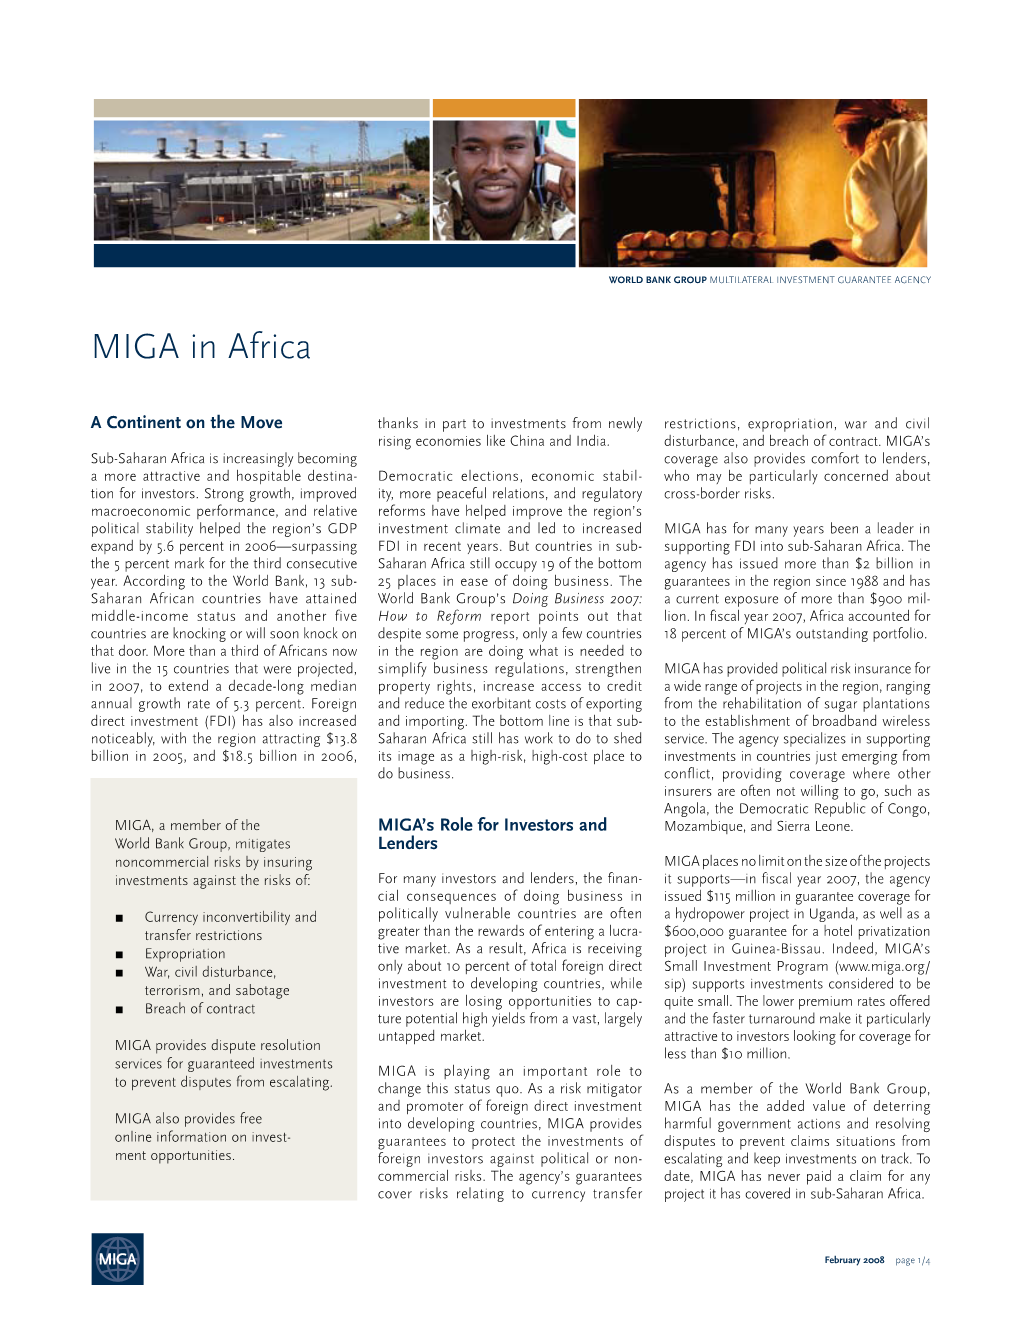 MIGA in Africa